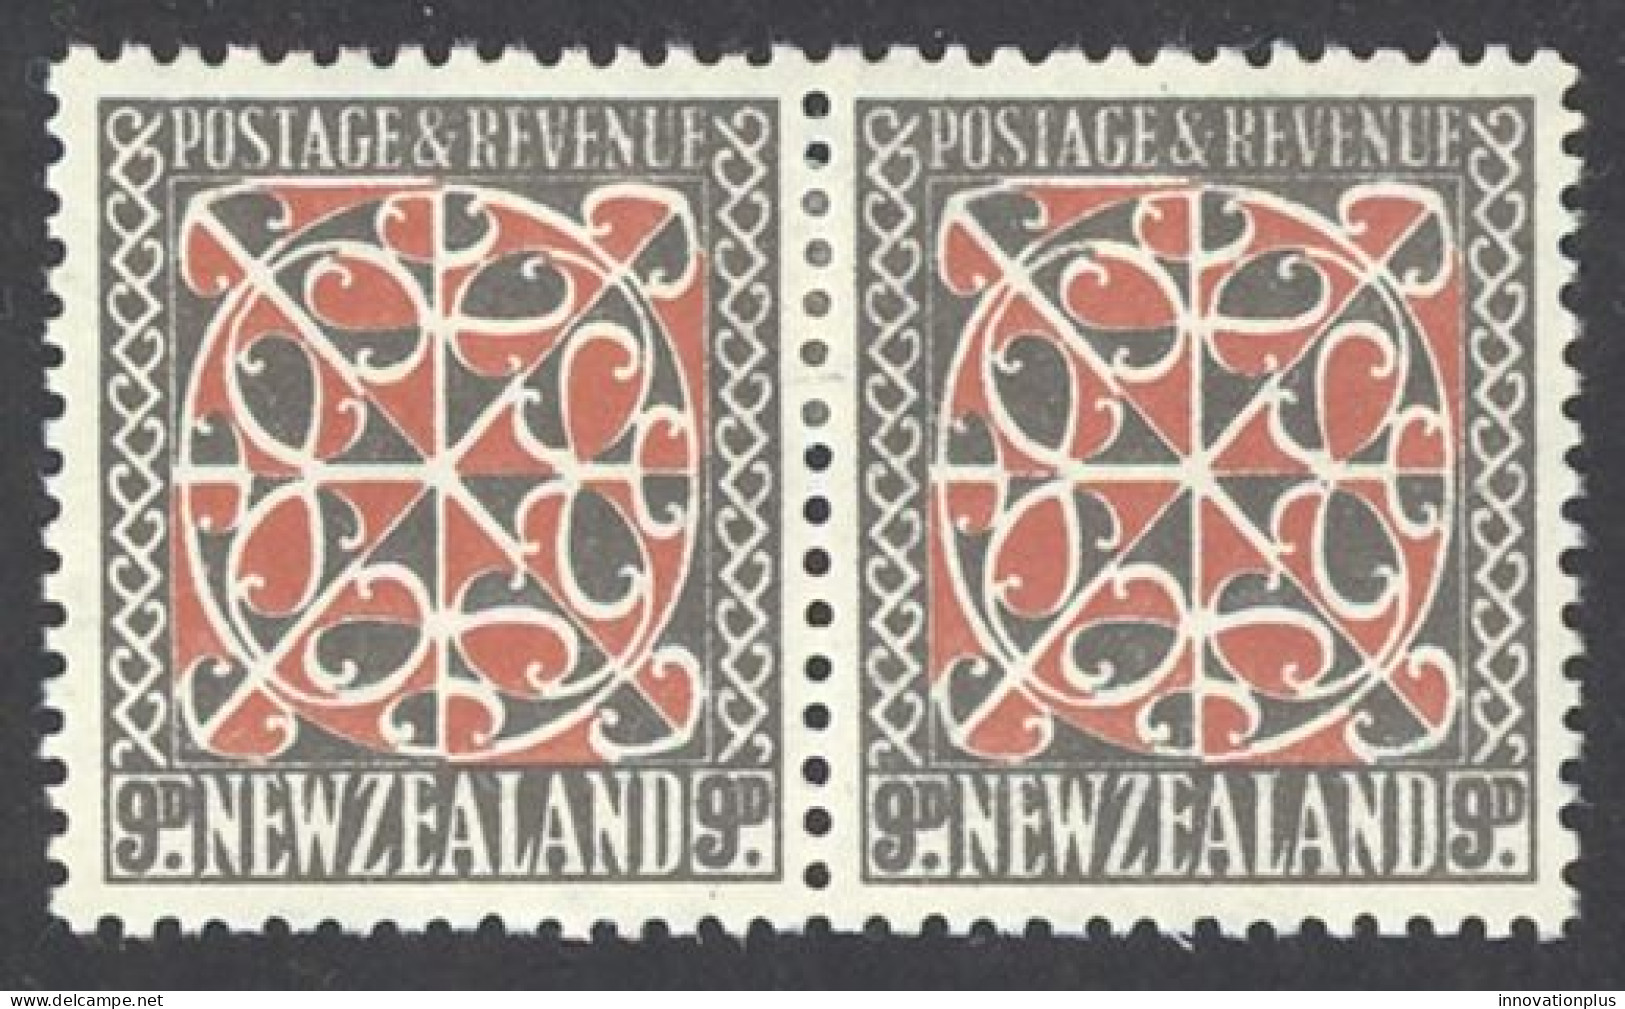 New Zealand Sc# 213 MH Pair 1936-1942 9p Maori Panel - Ongebruikt